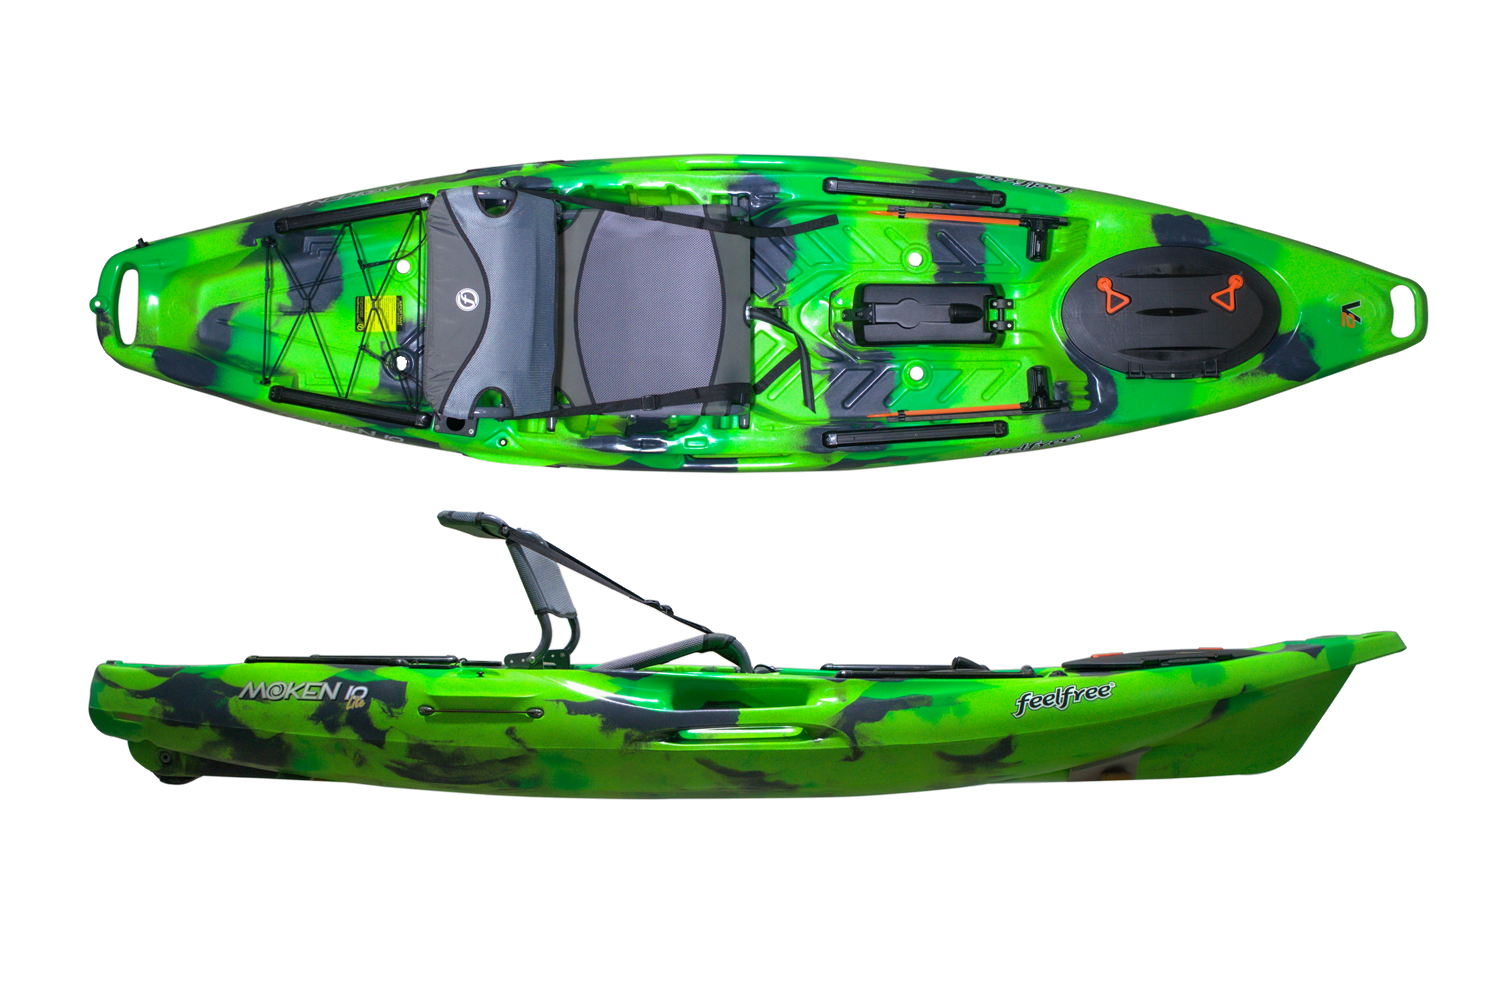 Feelfree Moken 10 Lite V2 - Fishing Sit On Top Kayaks